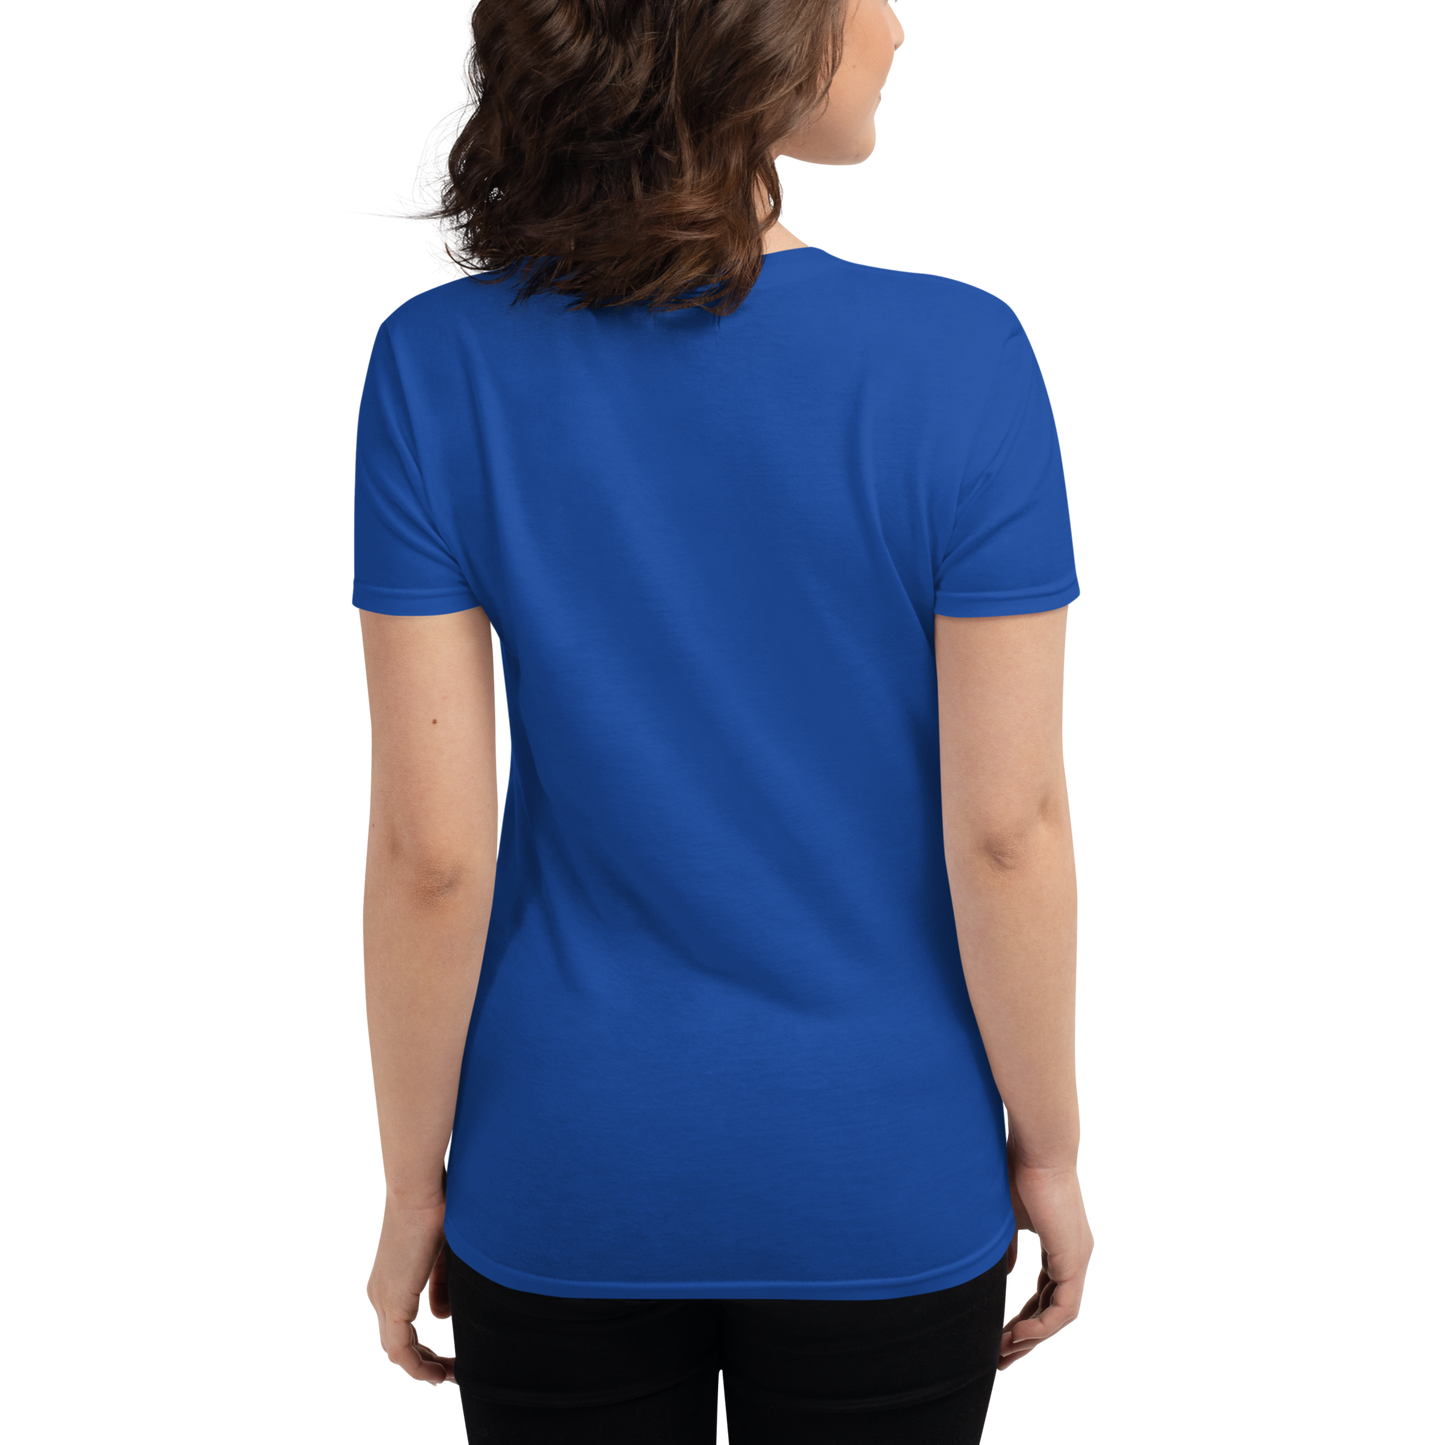 MEFG CELEBRATE - Women's short sleeve t-shirt